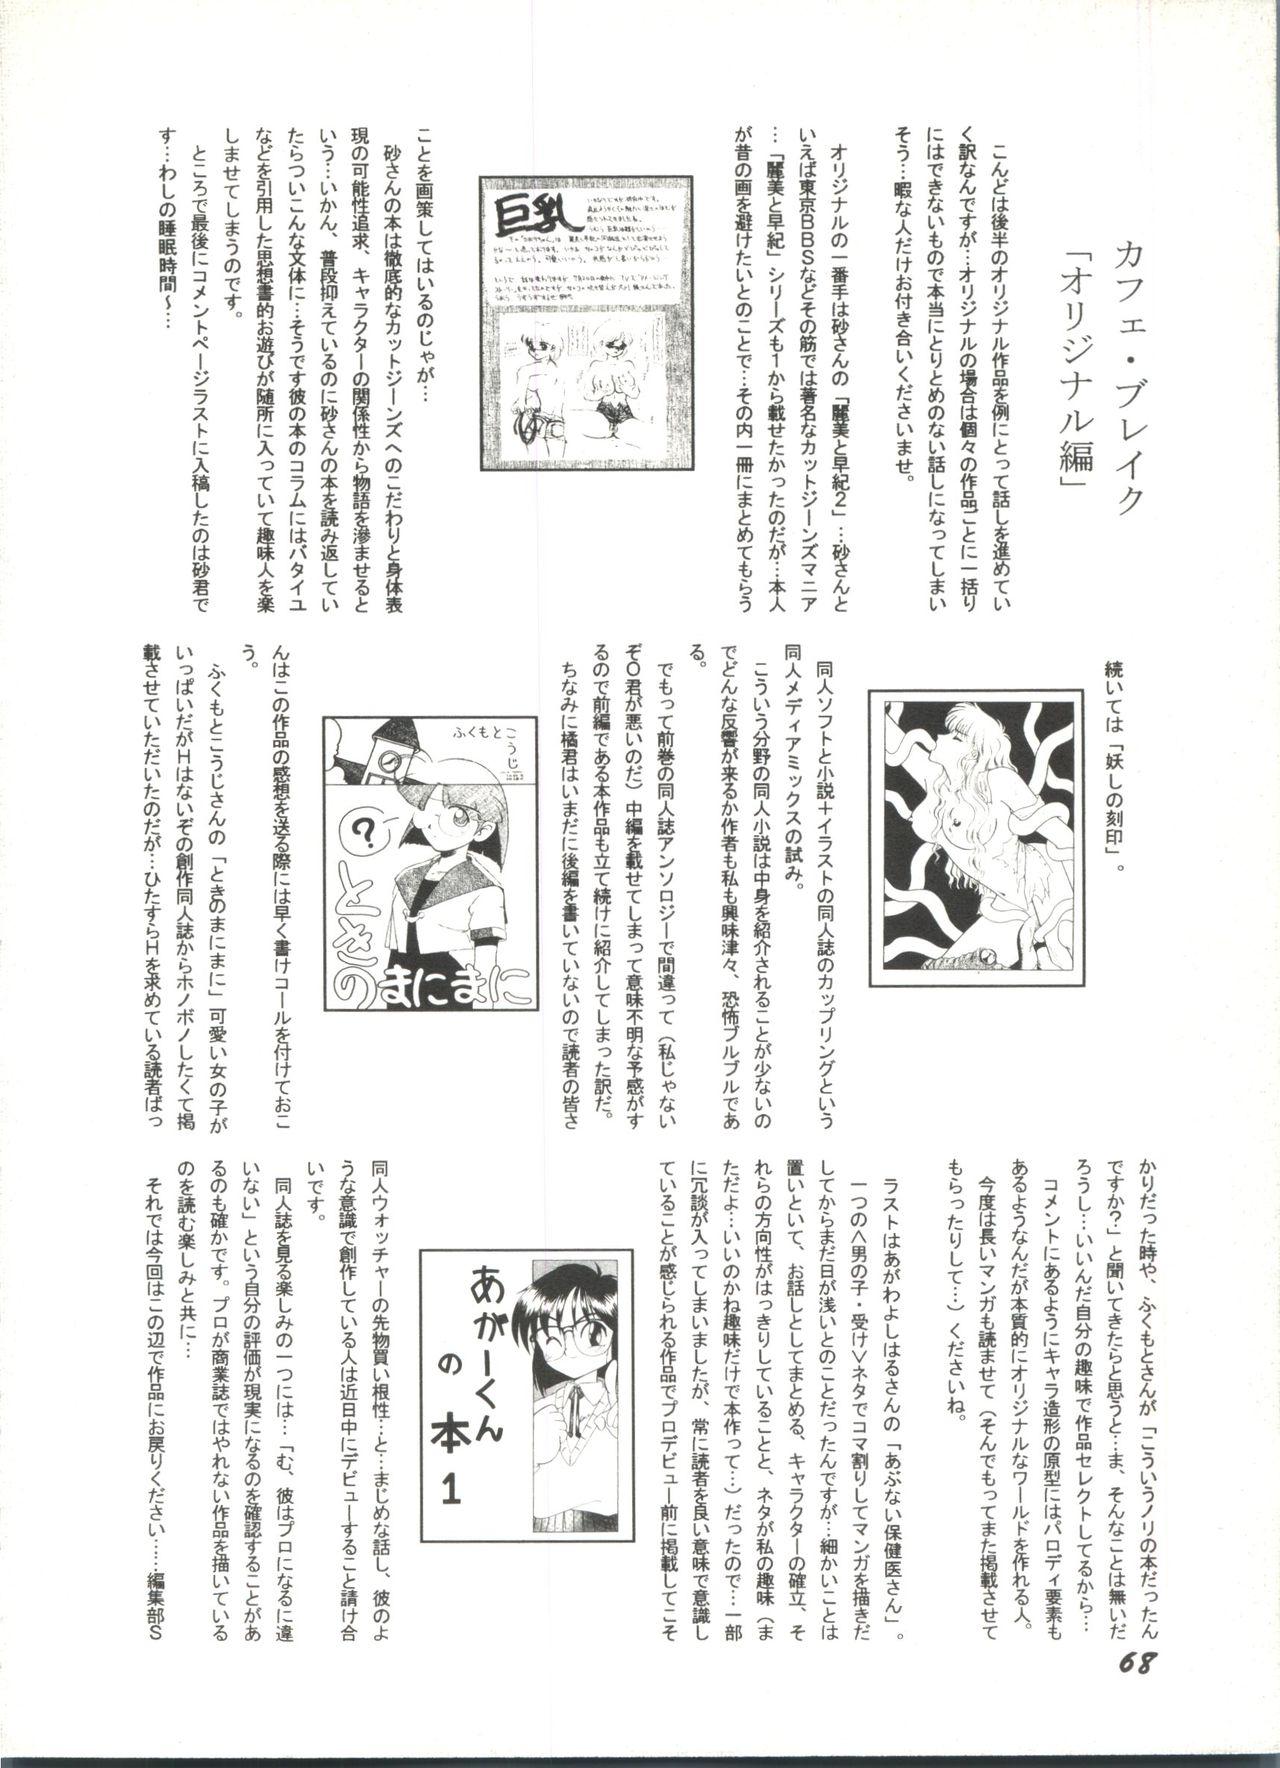 Bishoujo Doujinshi Anthology 1 69